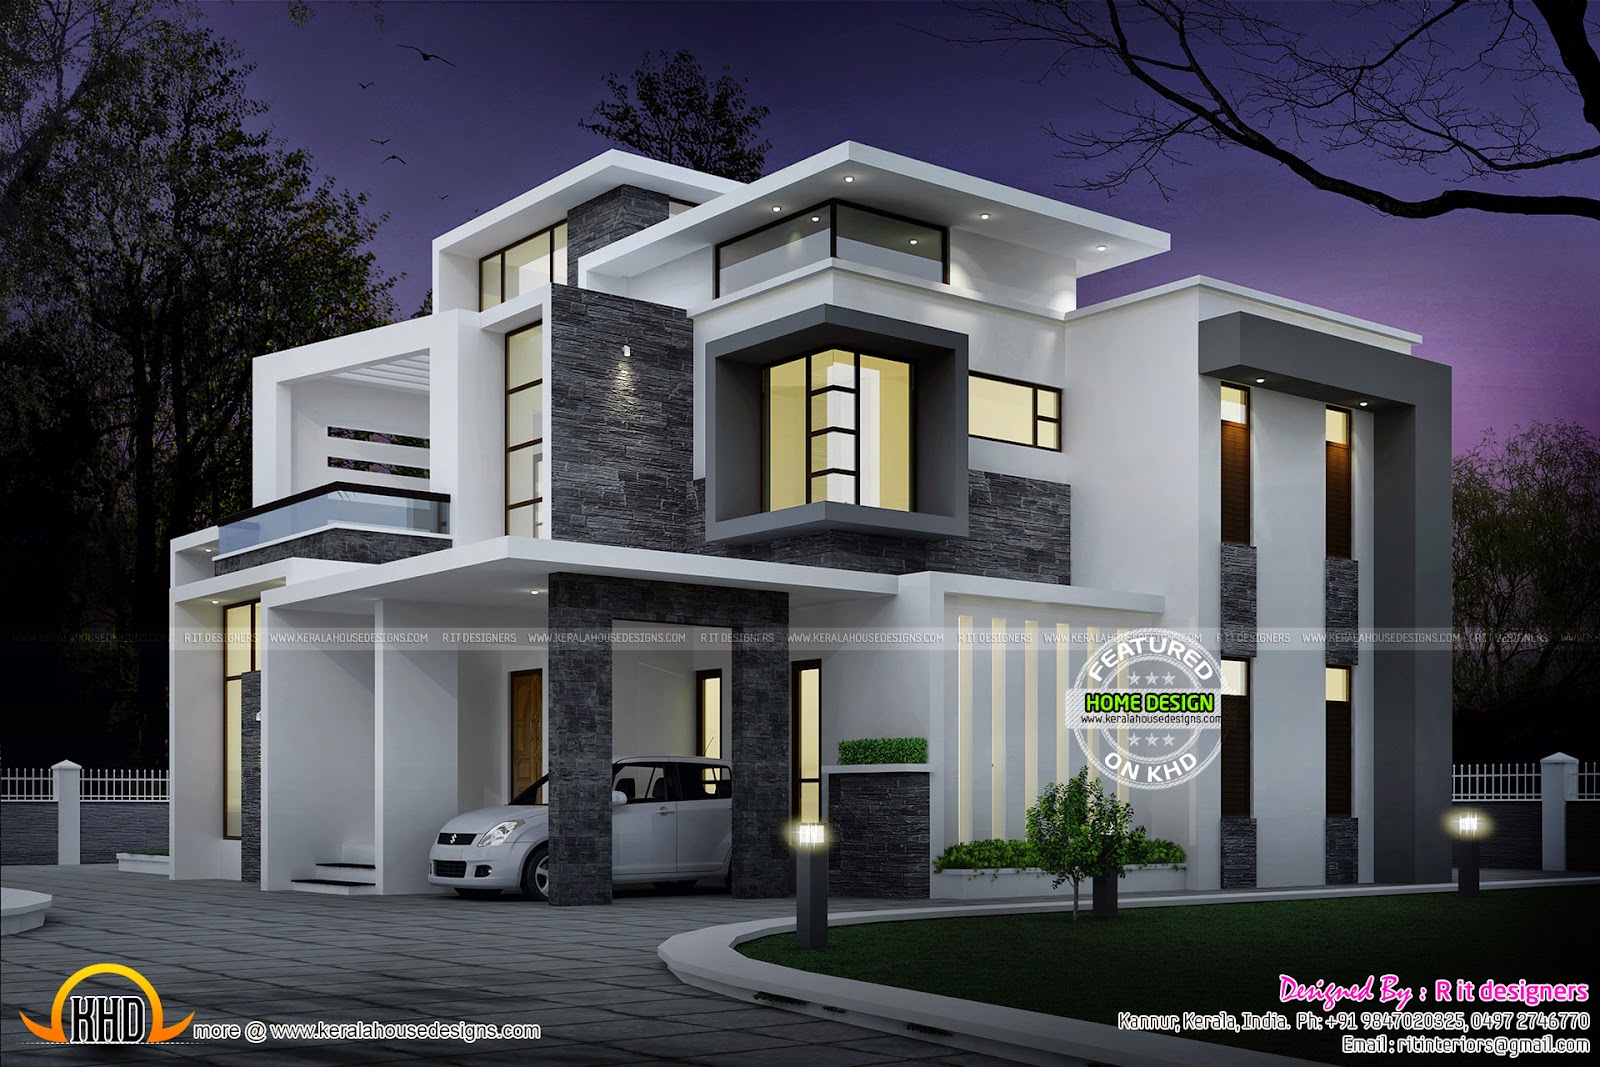 Grand contemporary home design - Kerala home design and floor plans